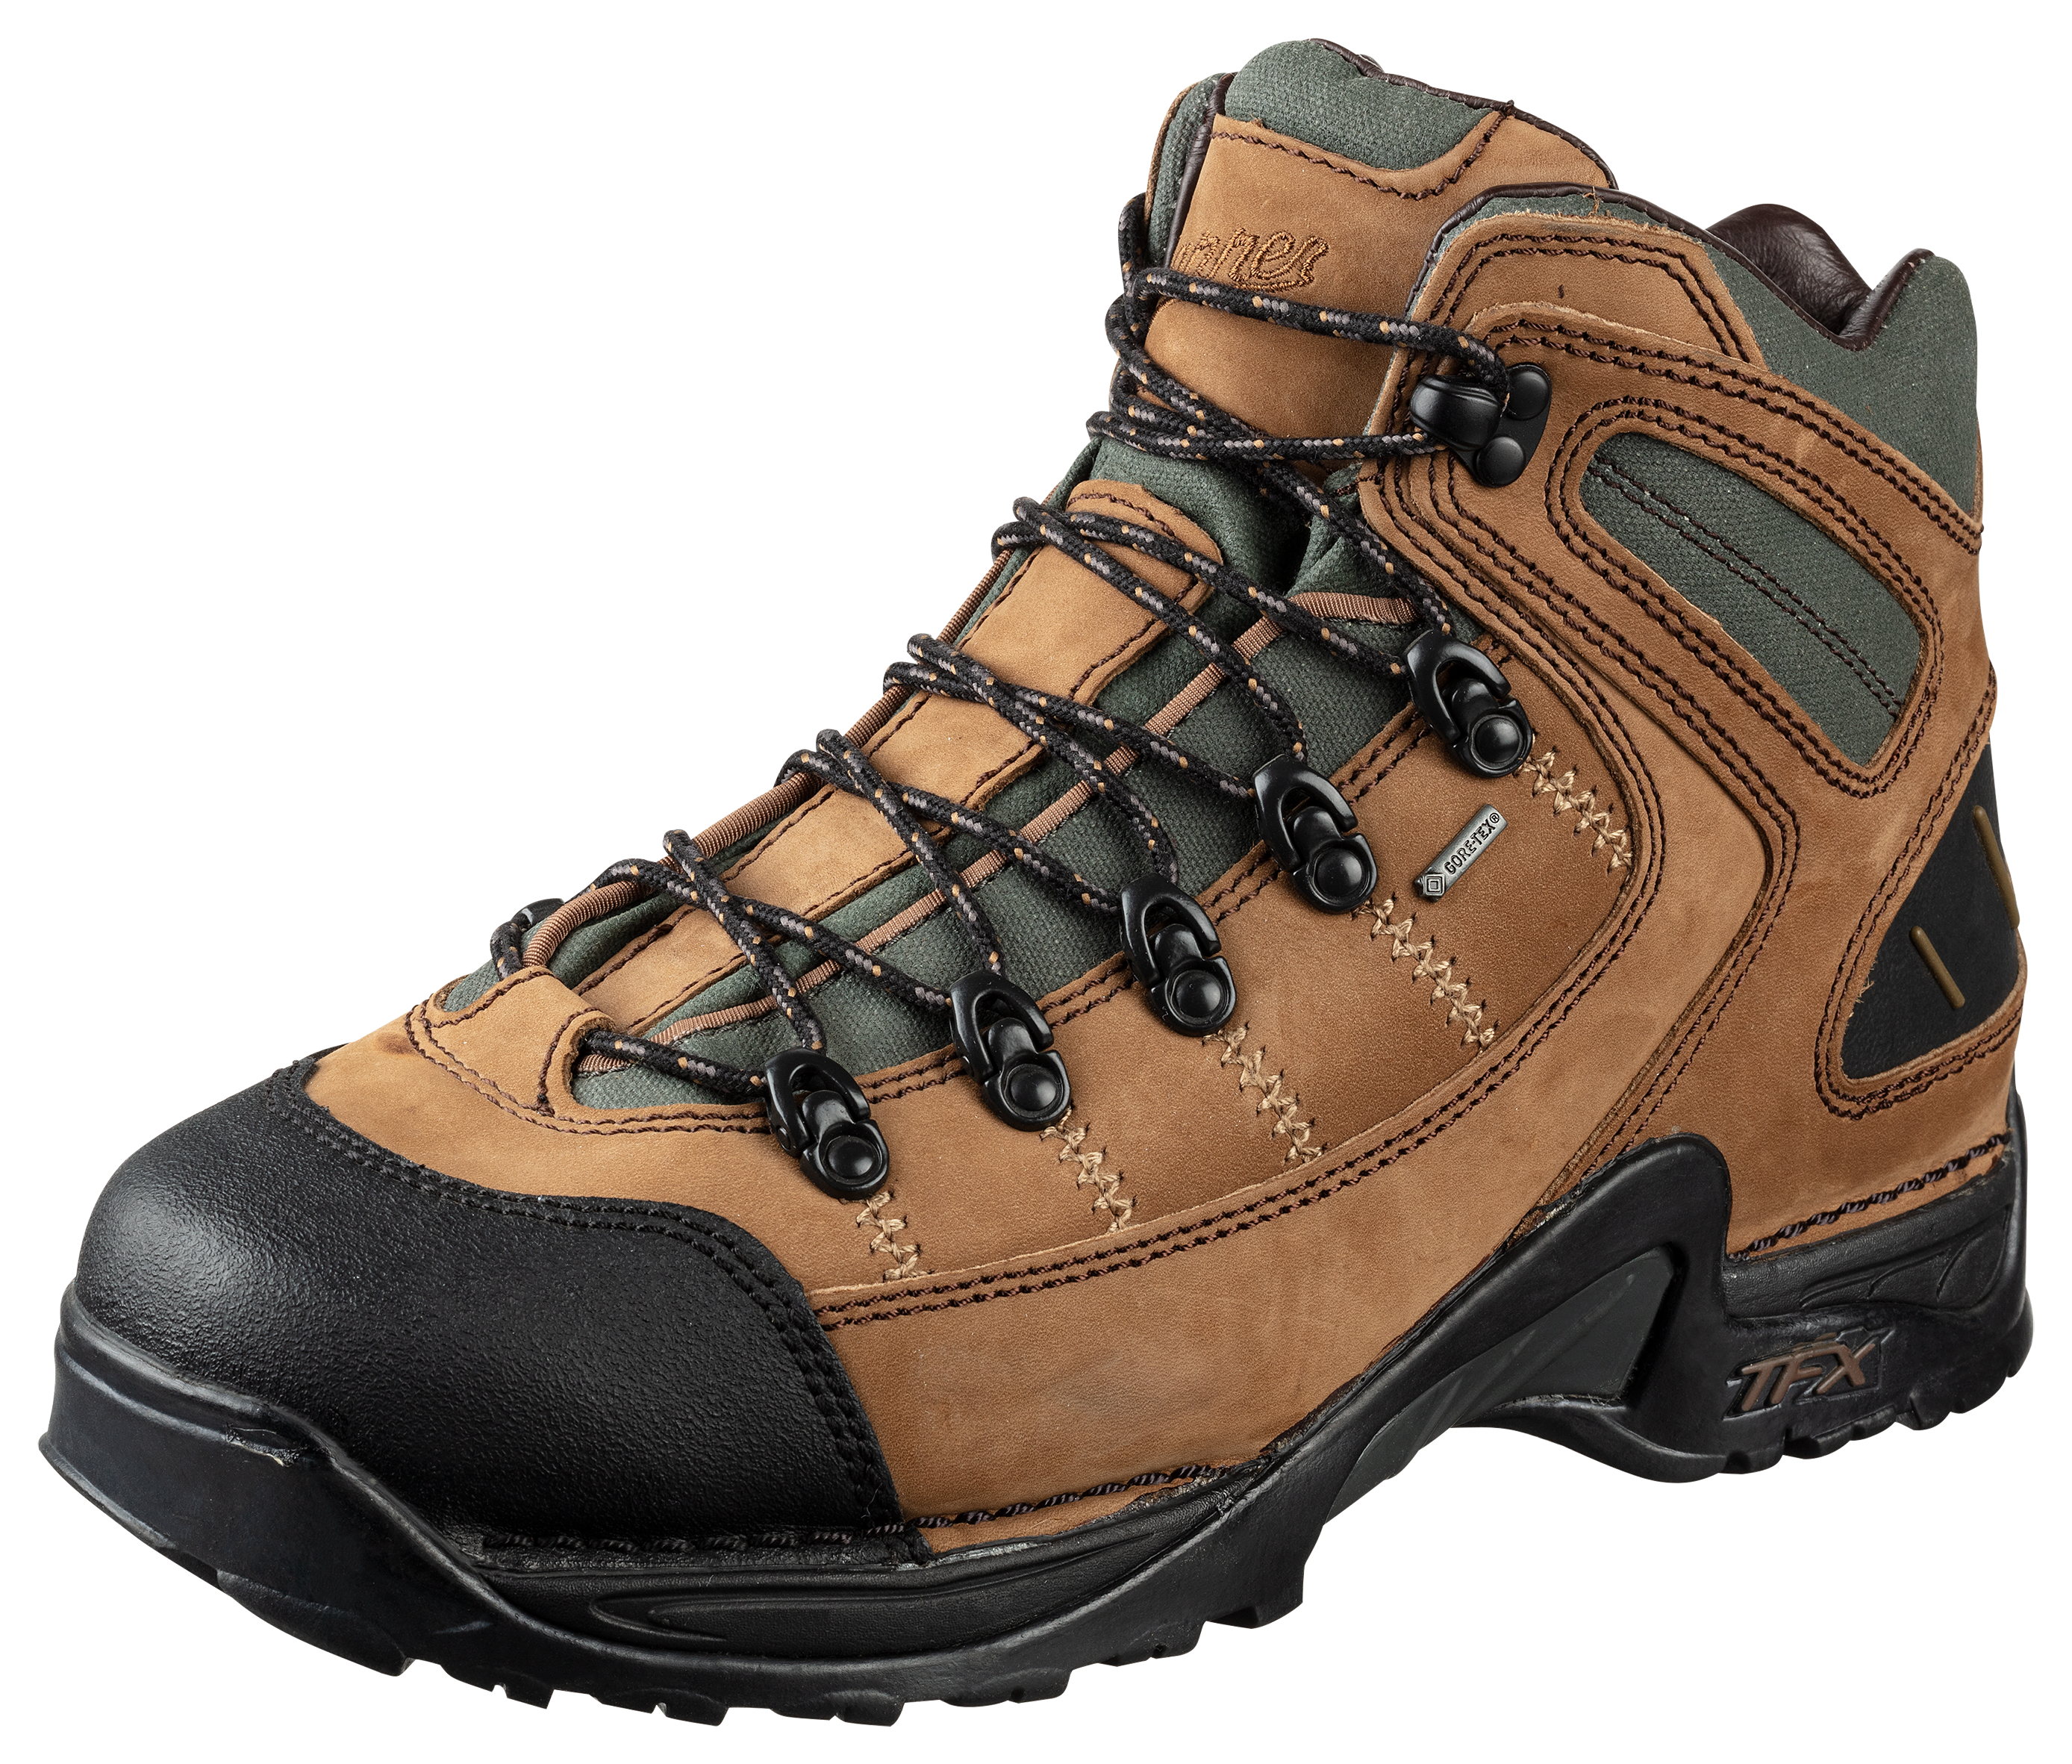 Danner 453 GORE-TEX Waterproof Hiking Boots for Men - Dark Tan - 11.5W